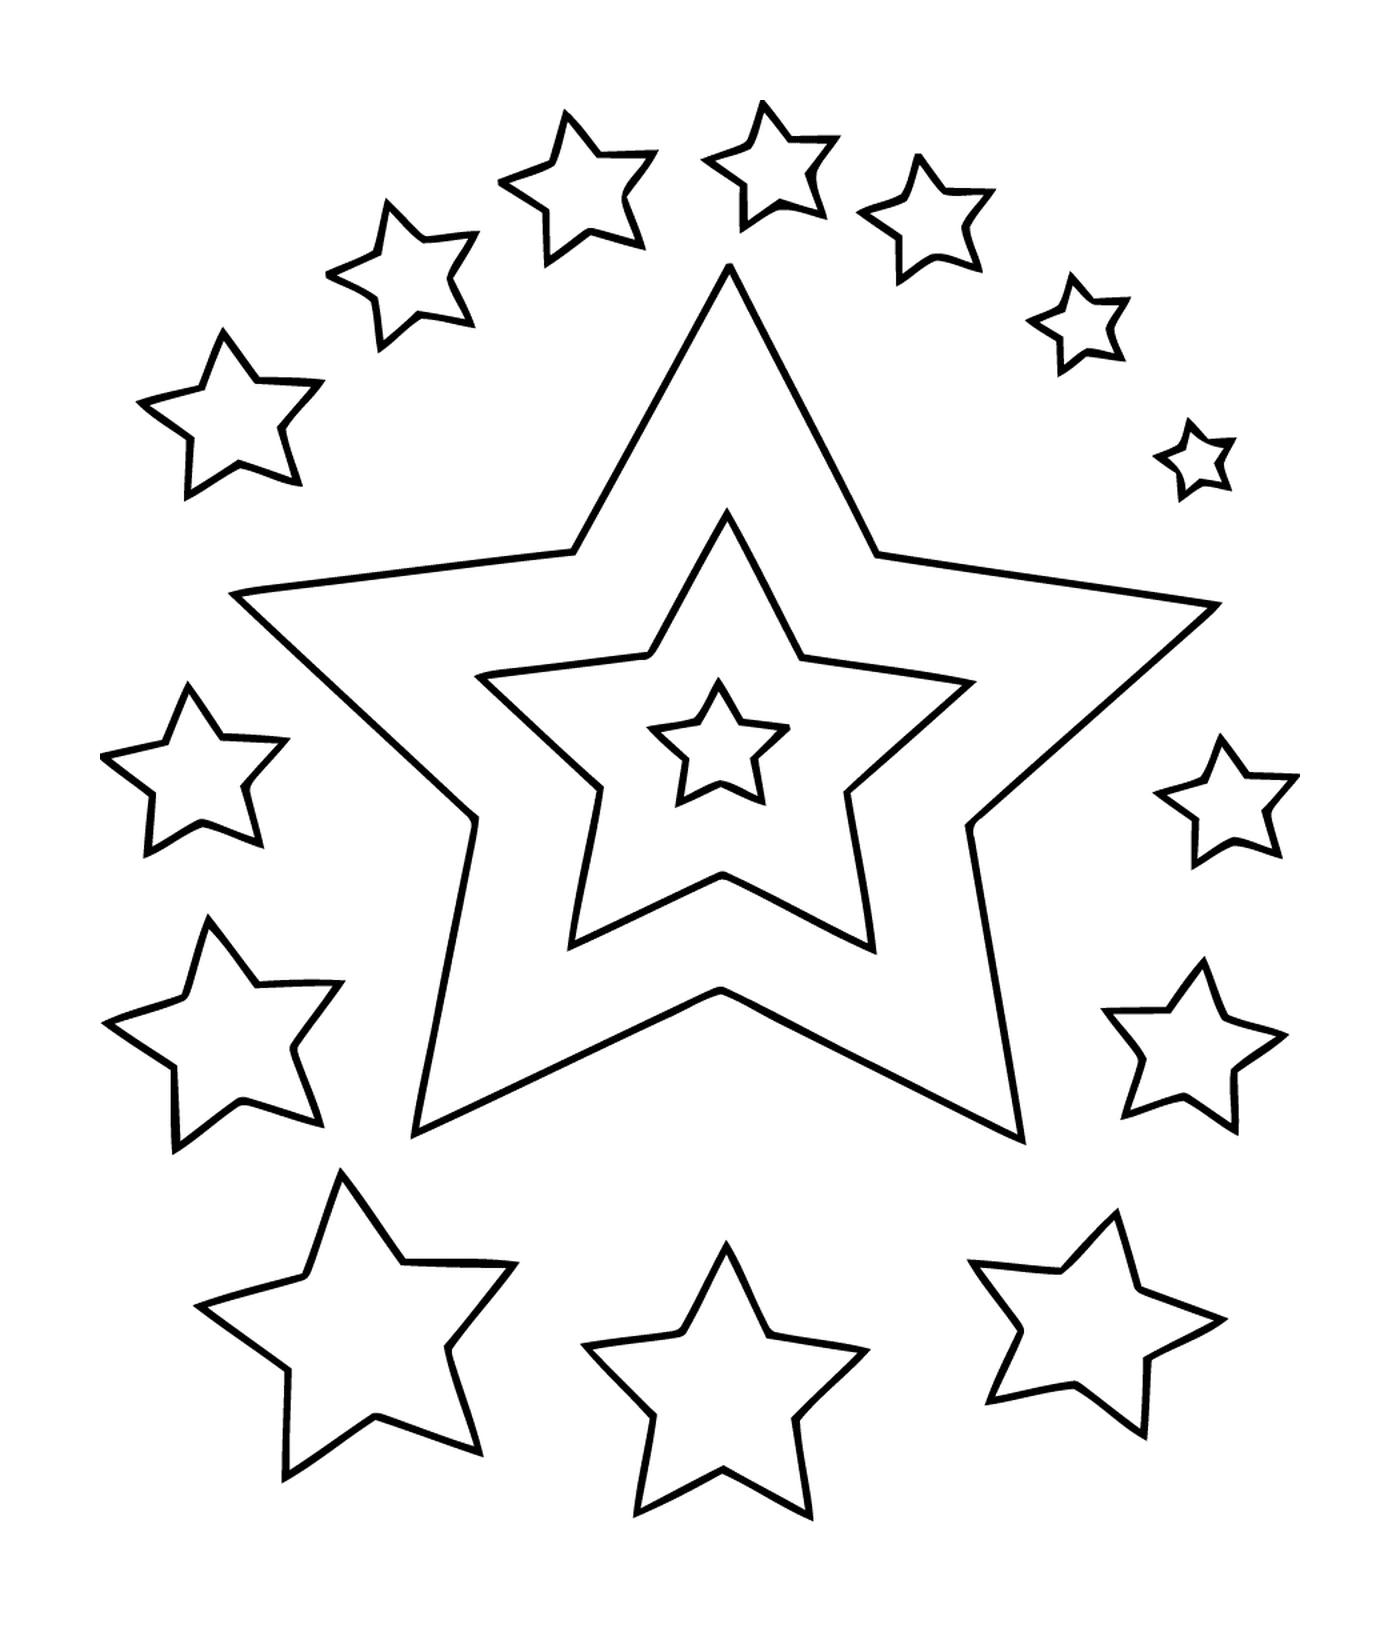  Un insieme di stelle abbaglianti 